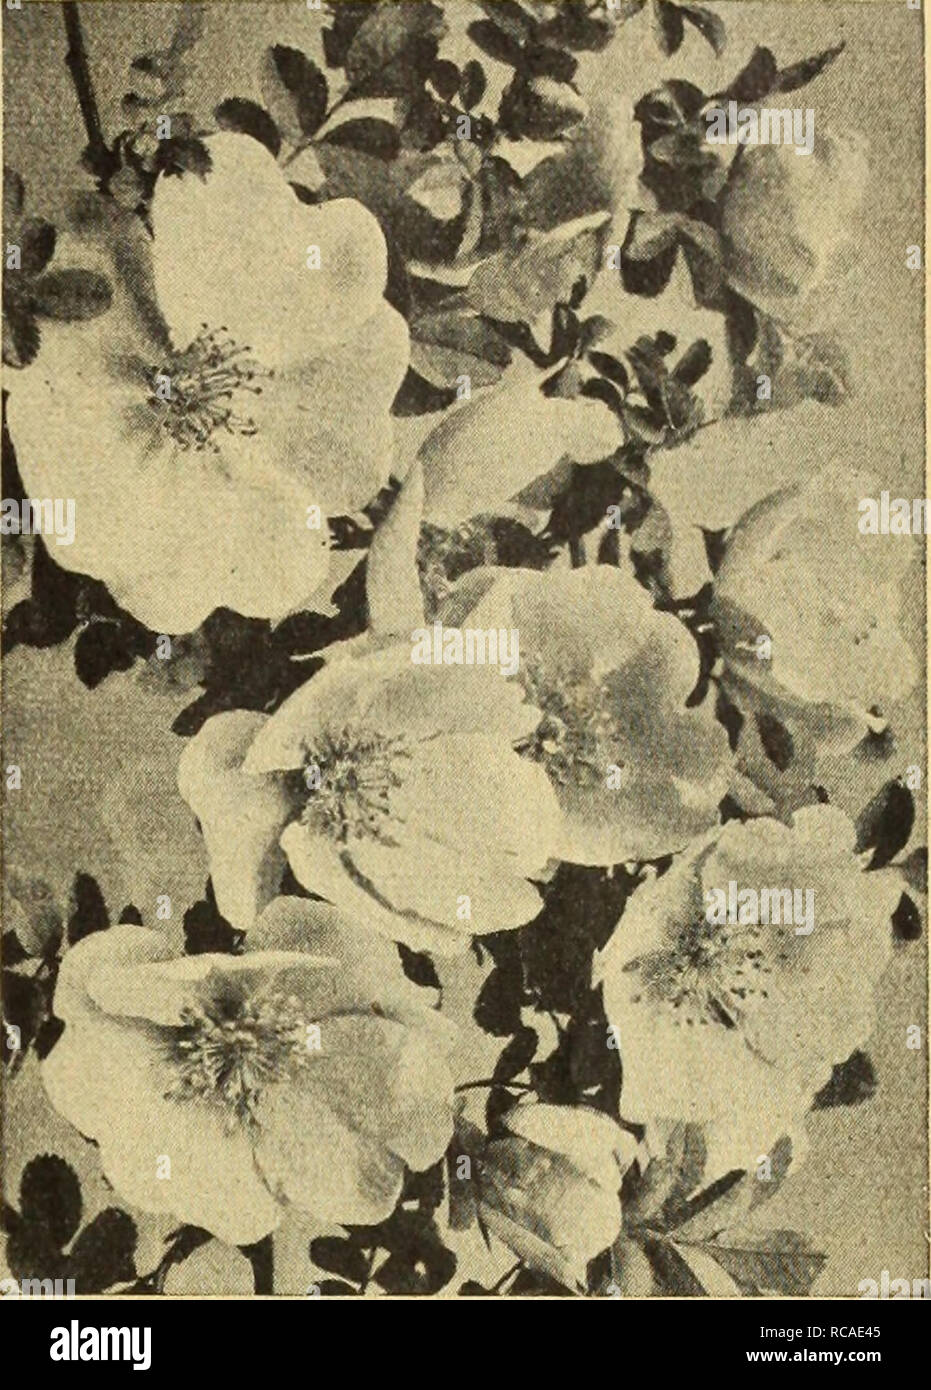 . Dreer ist Herbst Katalog 1926. Die Glühbirnen (Pflanzen) Kataloge; Blumen Samen Kataloge; Gartengeräte und Zubehör Kataloge; Baumschulen (Gartenbau) Kataloge; Gemüse Samen Kataloge. /FlEHRyAMm^^ v. Betriebssysteme auswählen -&gt; HlHHEliPIMlk 57 neue Hybrid Rugosa Rose F. J. Grootendorst Dies ist eine neue Art der Rose, die ordnungsgemäß eine Rugosa Baby Rambler, es sein ein Kreuz zwischen Rugosa und die Crimson Baby Rambler. Stellen Sie sich einen Strauch Rugosa Rose bedeckt mit Traversen von crimson Baby Rambler Rosen, und Sie werden einen fairen Konzeption dieser neuen Hybriden^% riety haben. Es ist nicht eine Rose, die Sie t Stockfoto